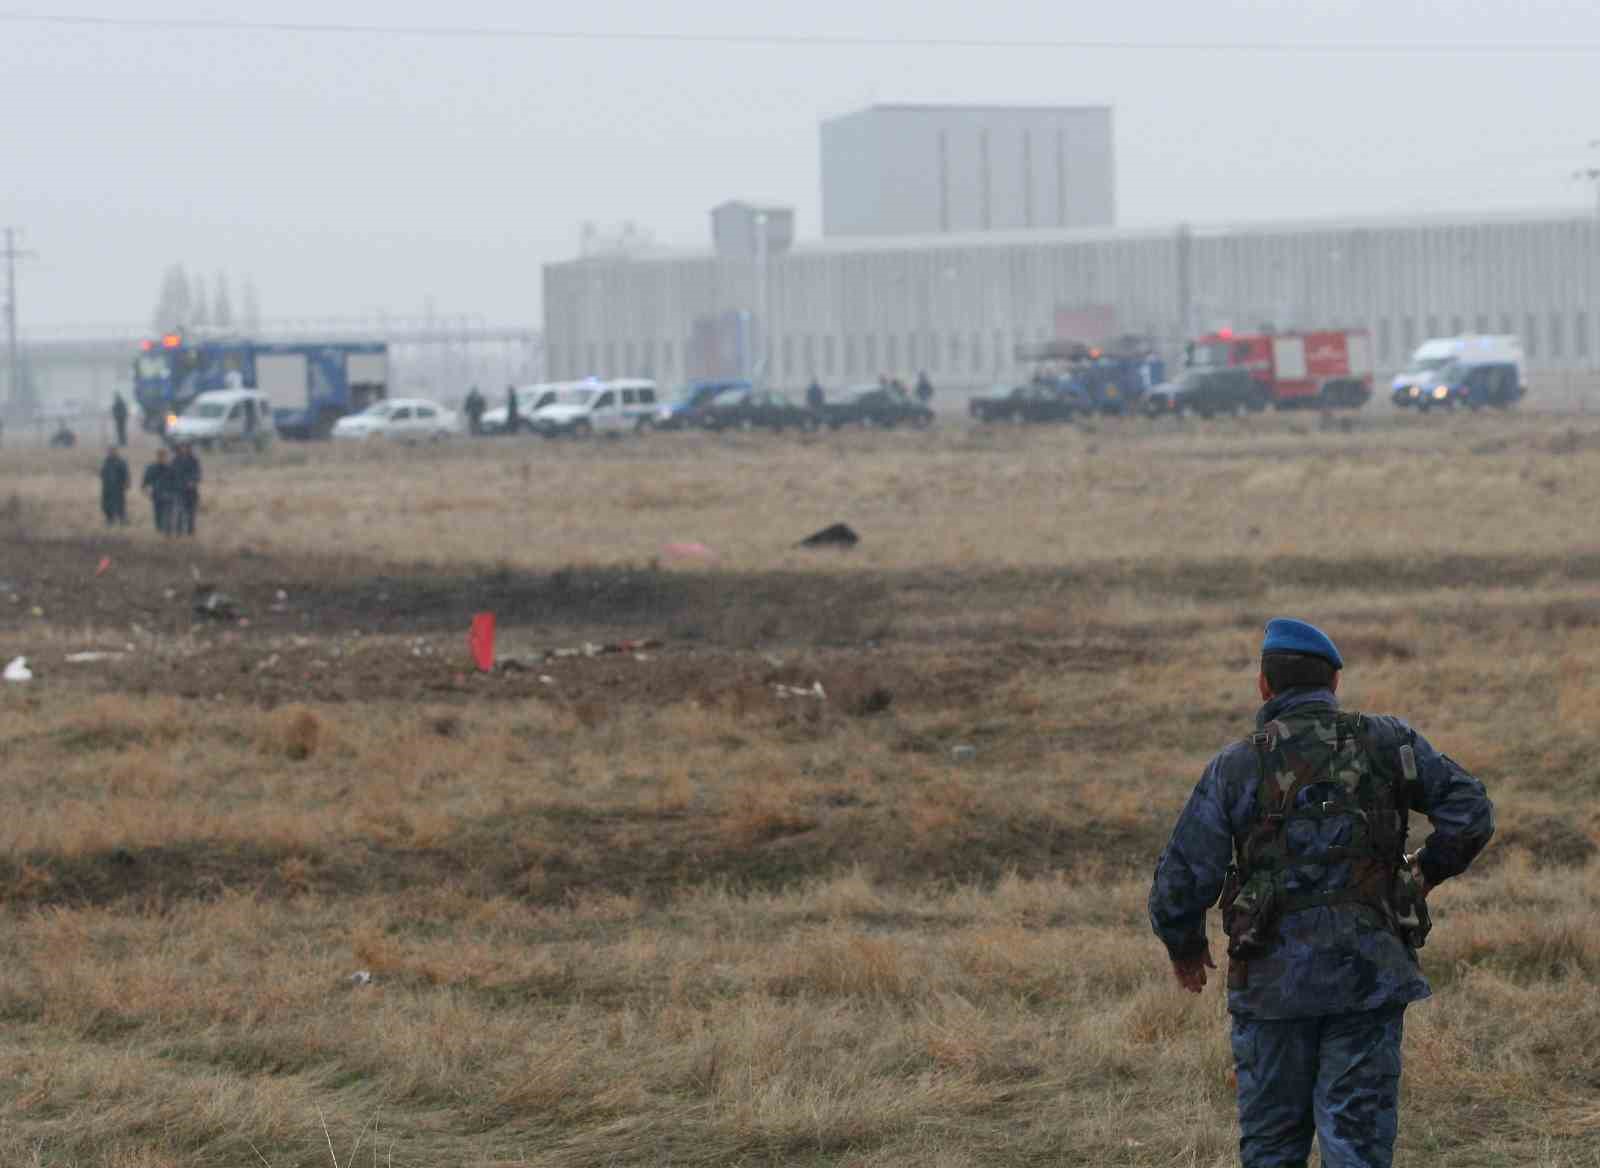 Konya’da son 15 yılda askeri uçak kazalarında 7’si pilot 8 askeri personel şehit oldu
